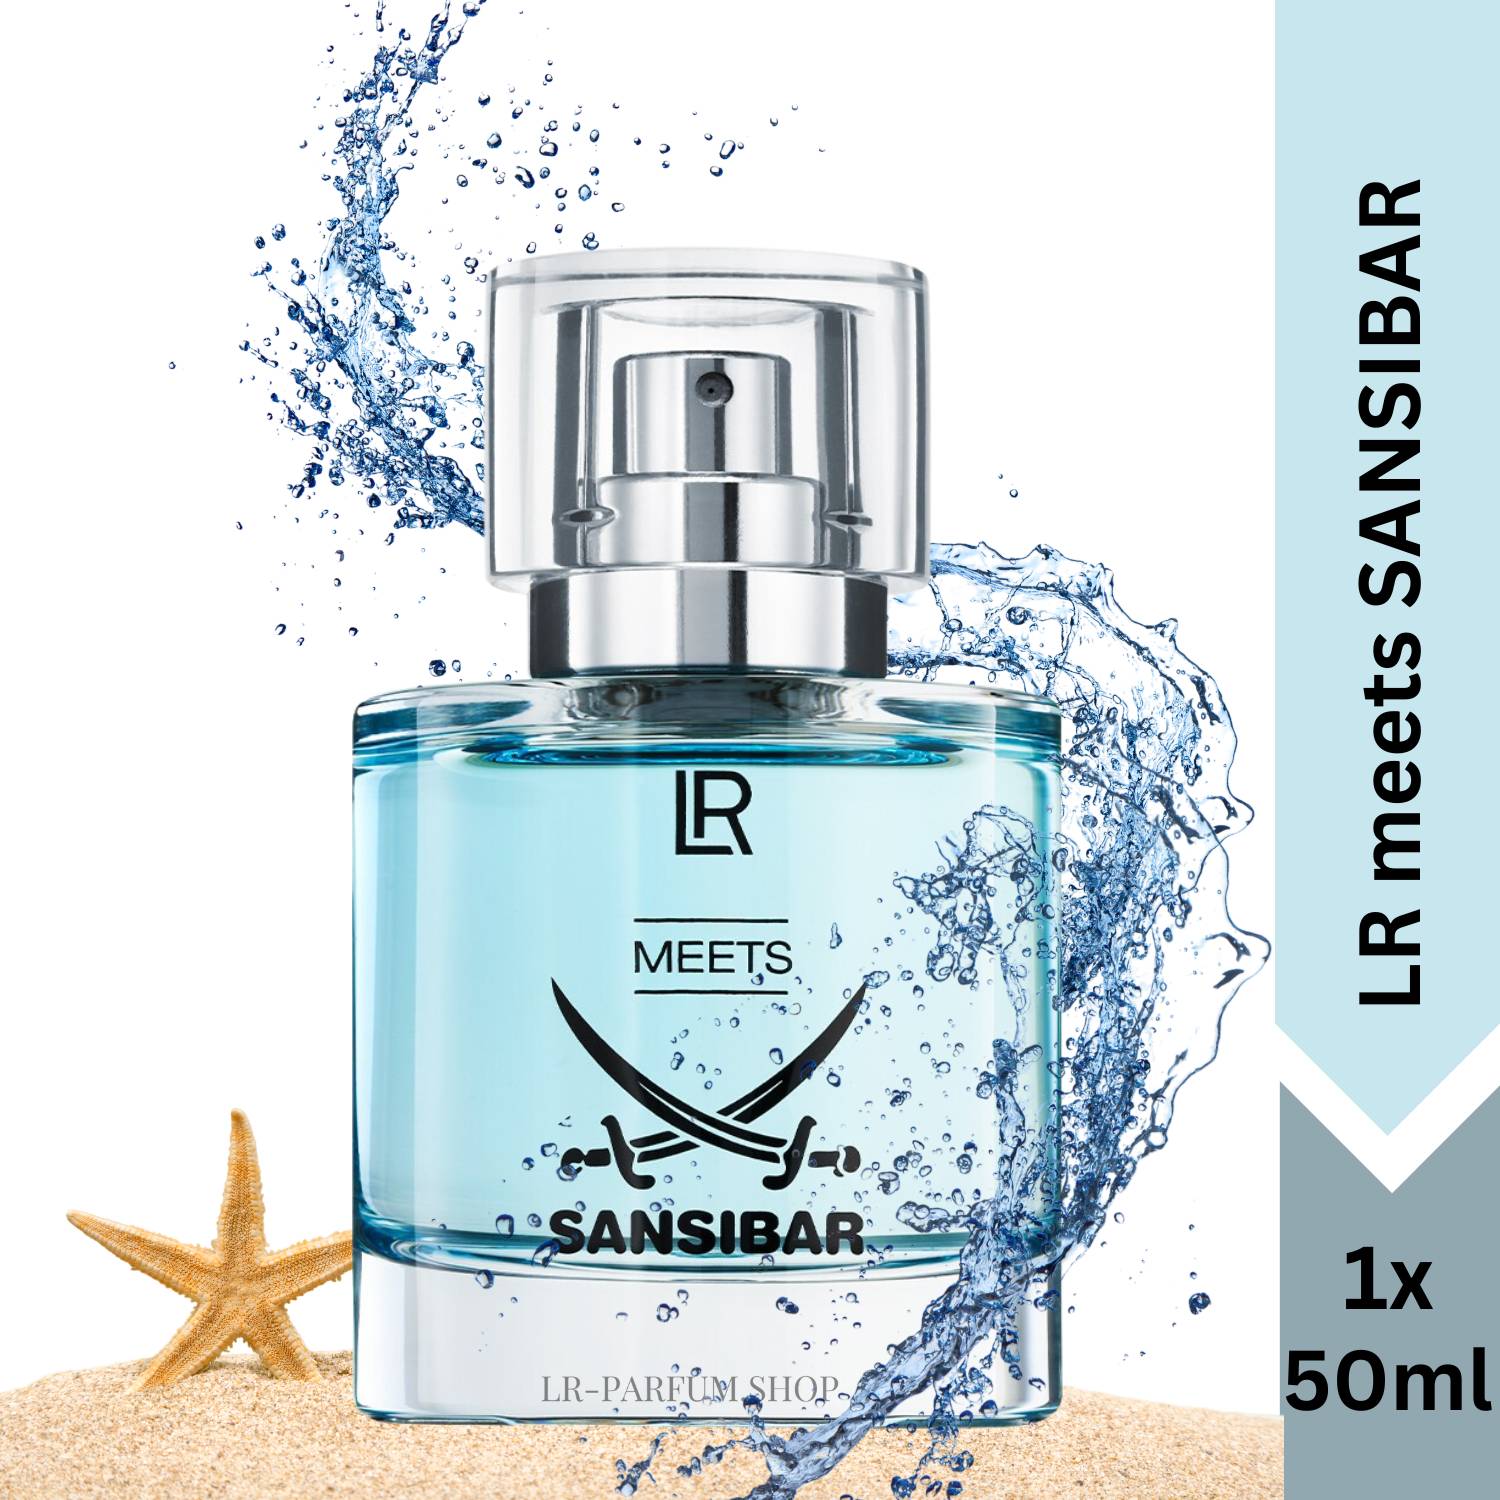 LR meets SANSIBAR - Eau de Parfum 50ml, for women & men - LR-Parfum.shop